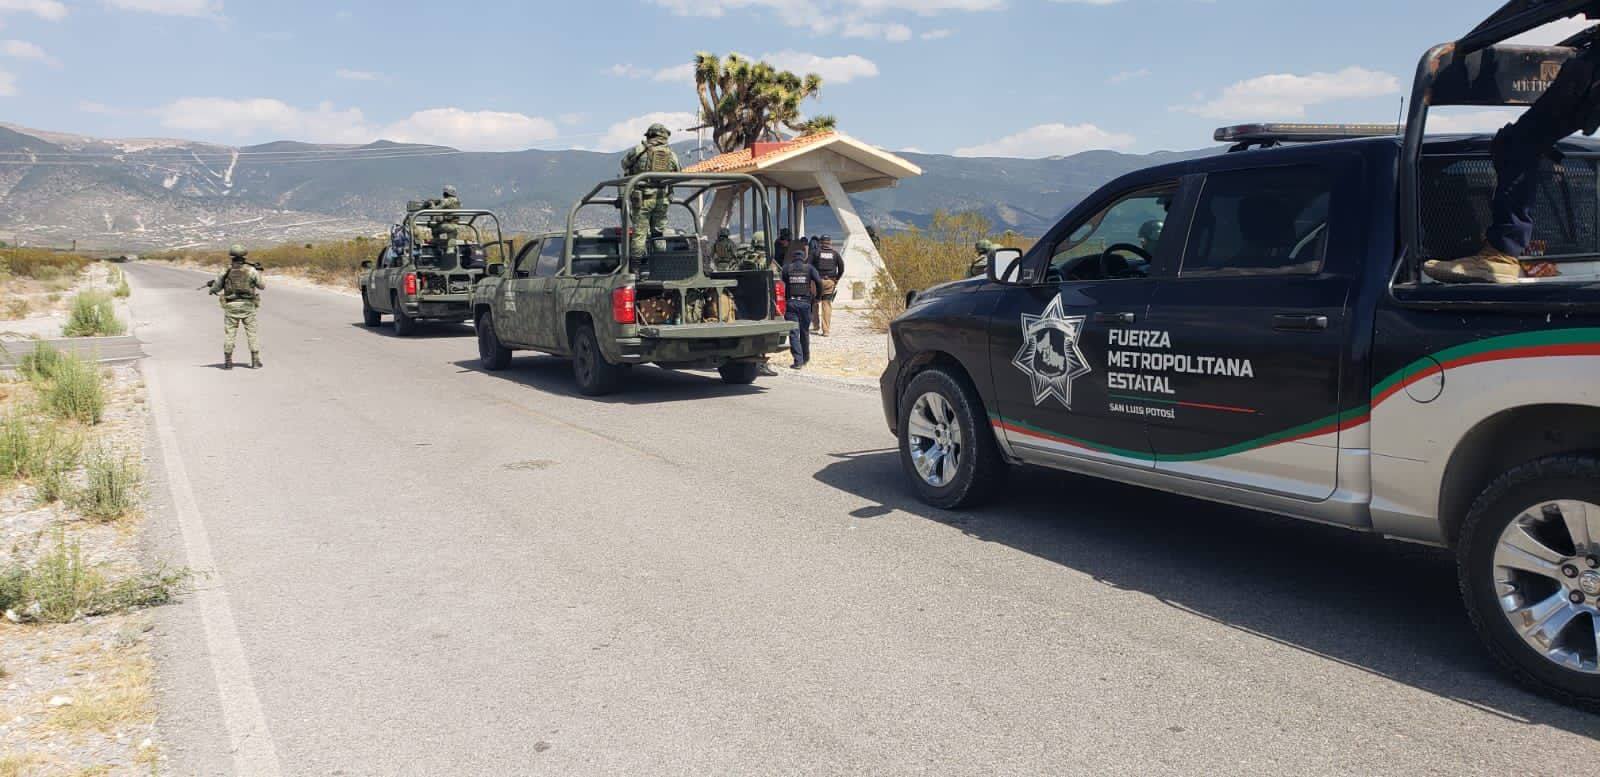 se llevan a cabo acciones operativas de prevención y combate de los delitos de manera conjunta con el Ejército Mexicano, Guardia Civil, FGE y Policía Estatal.